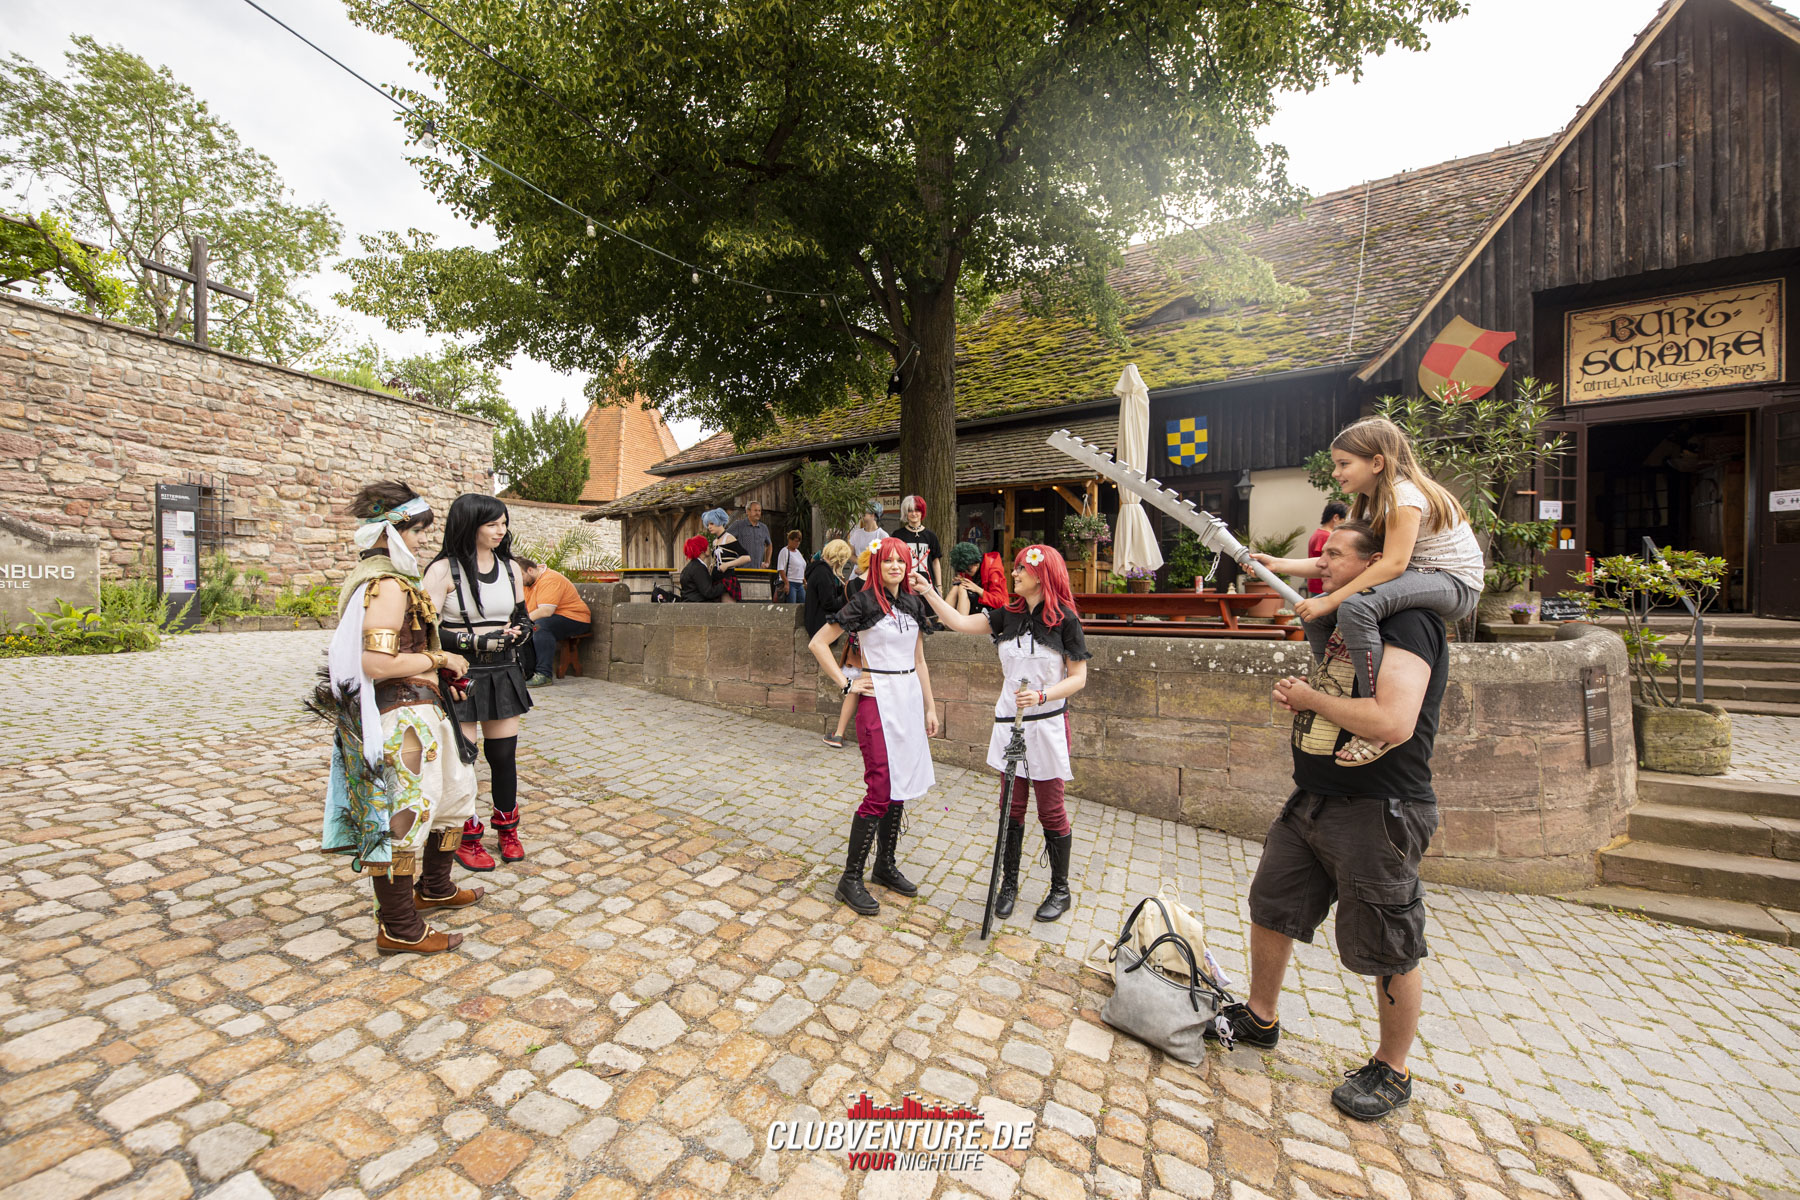 Cos in the Castle auf der Leuchtenburg am 28.06.2020

Clubventure - Eventfotos frei auf Facebook

Fotos:
Tom Wenig
https://www.tomwenig.de